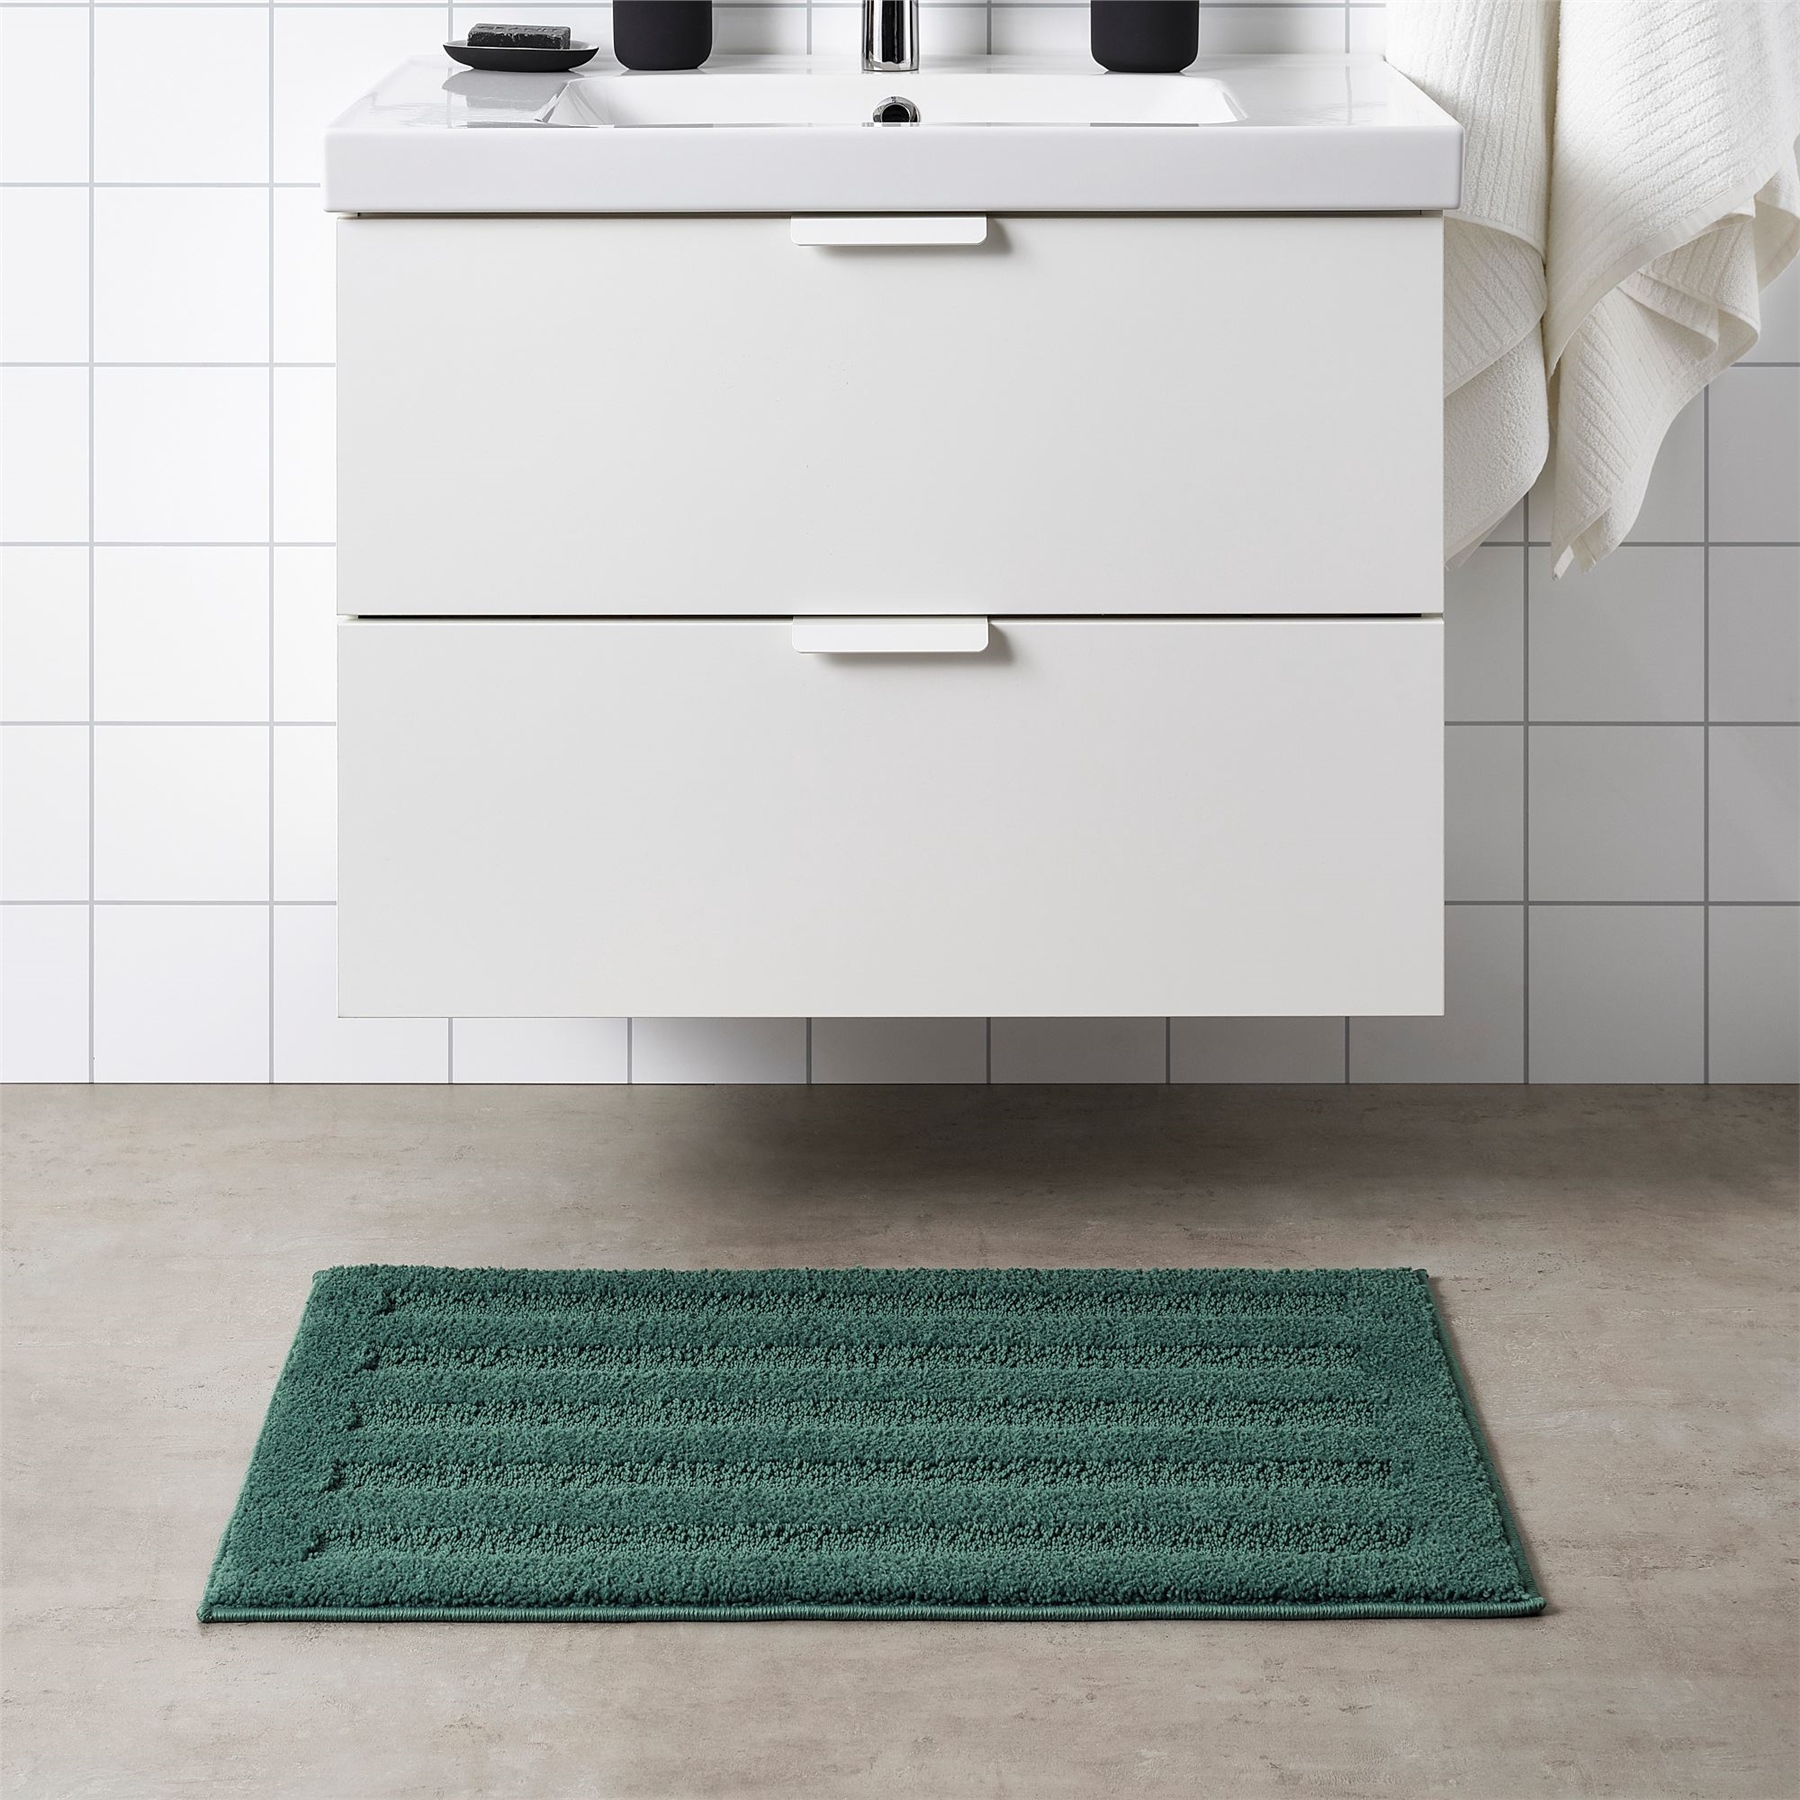 Ikea Emten Banyo Paspası 50x80 cm Koyu Yeşil 40465525